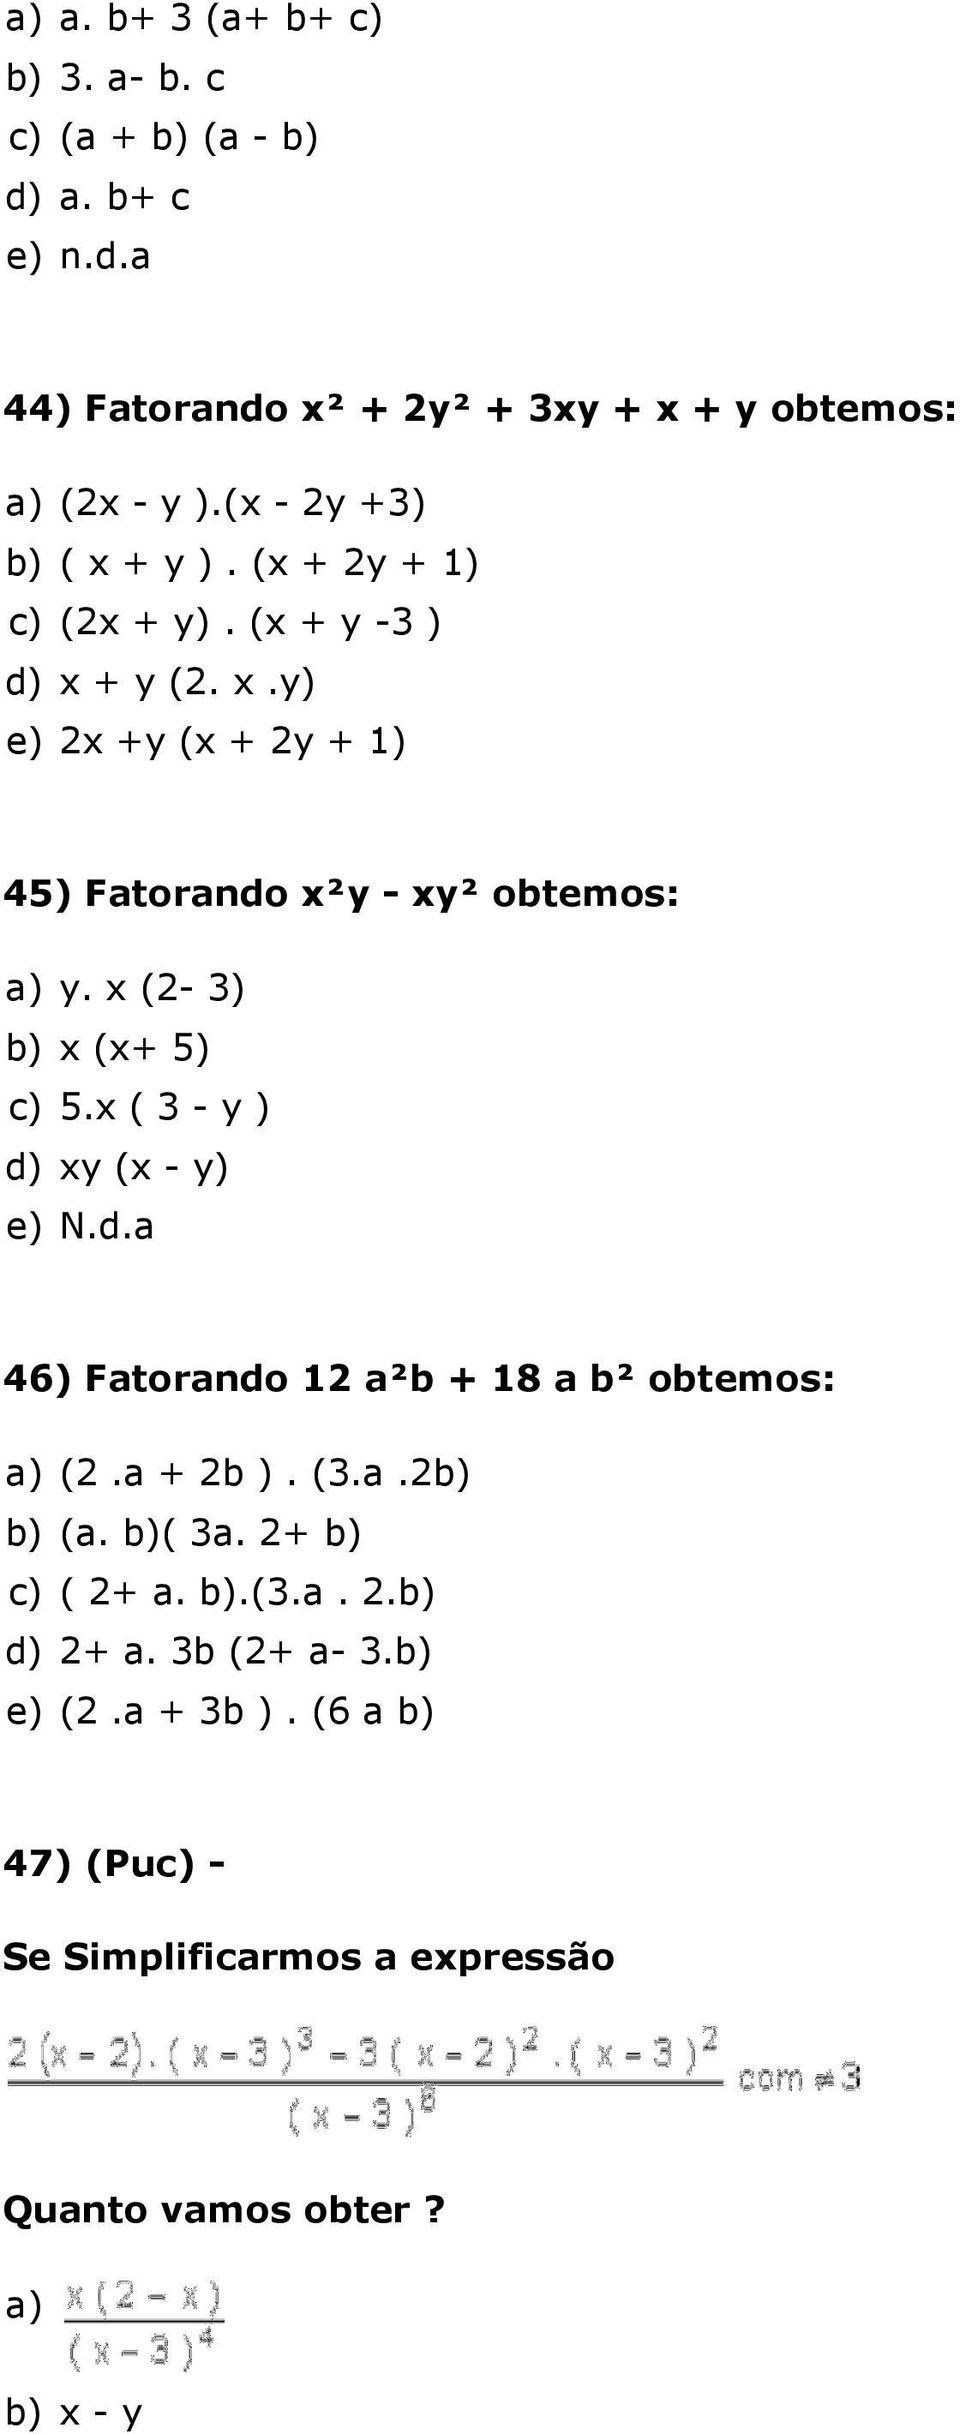 x (2-3) b) x (x+ 5) c) 5.x ( 3 - y ) d) xy (x - y) e) N.d.a 46) Fatorando 12 a²b + 18 a b² obtemos: a) (2.a + 2b ). (3.a.2b) b) (a. b)( 3a.